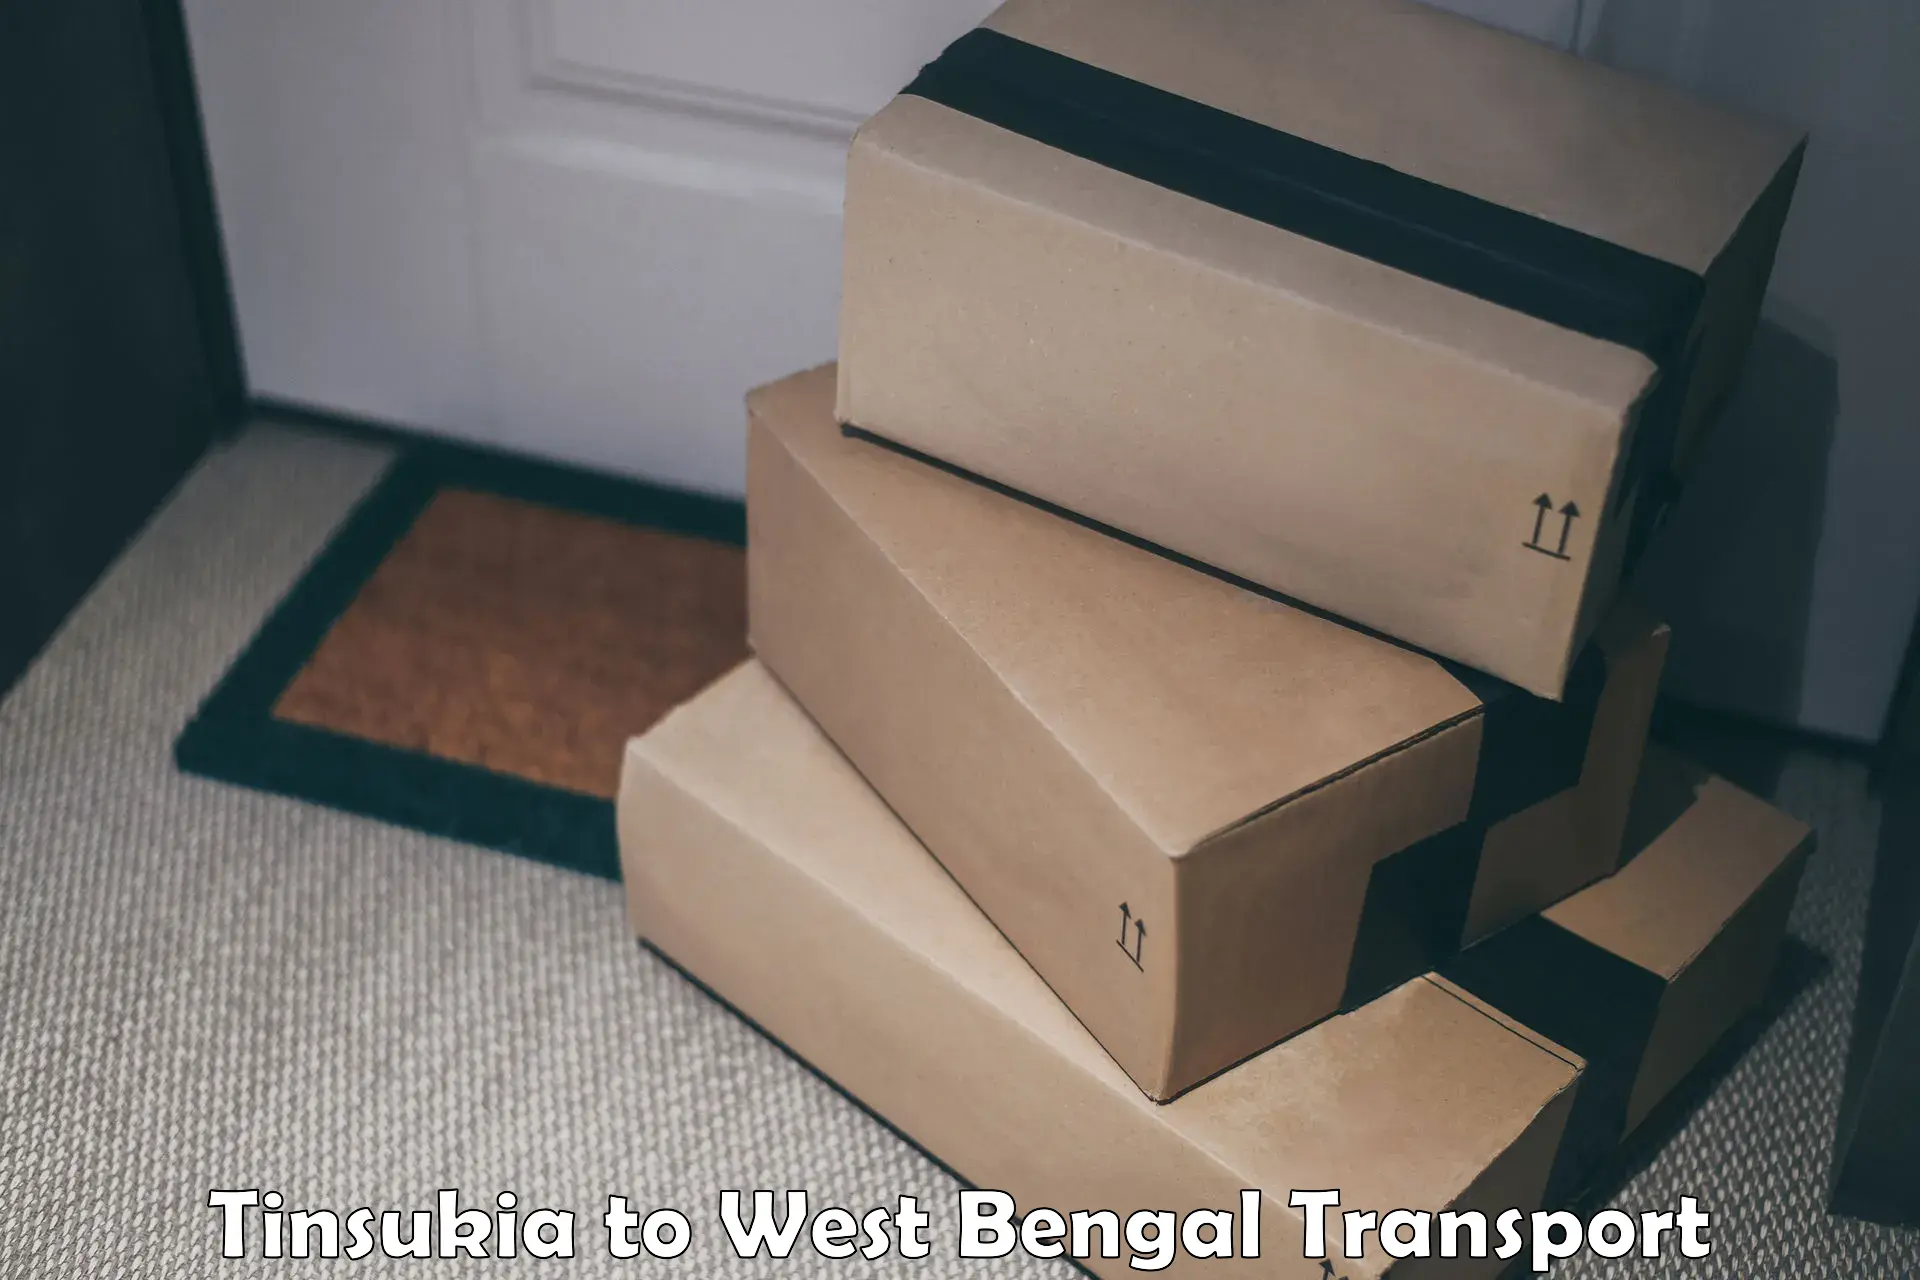 Furniture transport service Tinsukia to Bijanbari